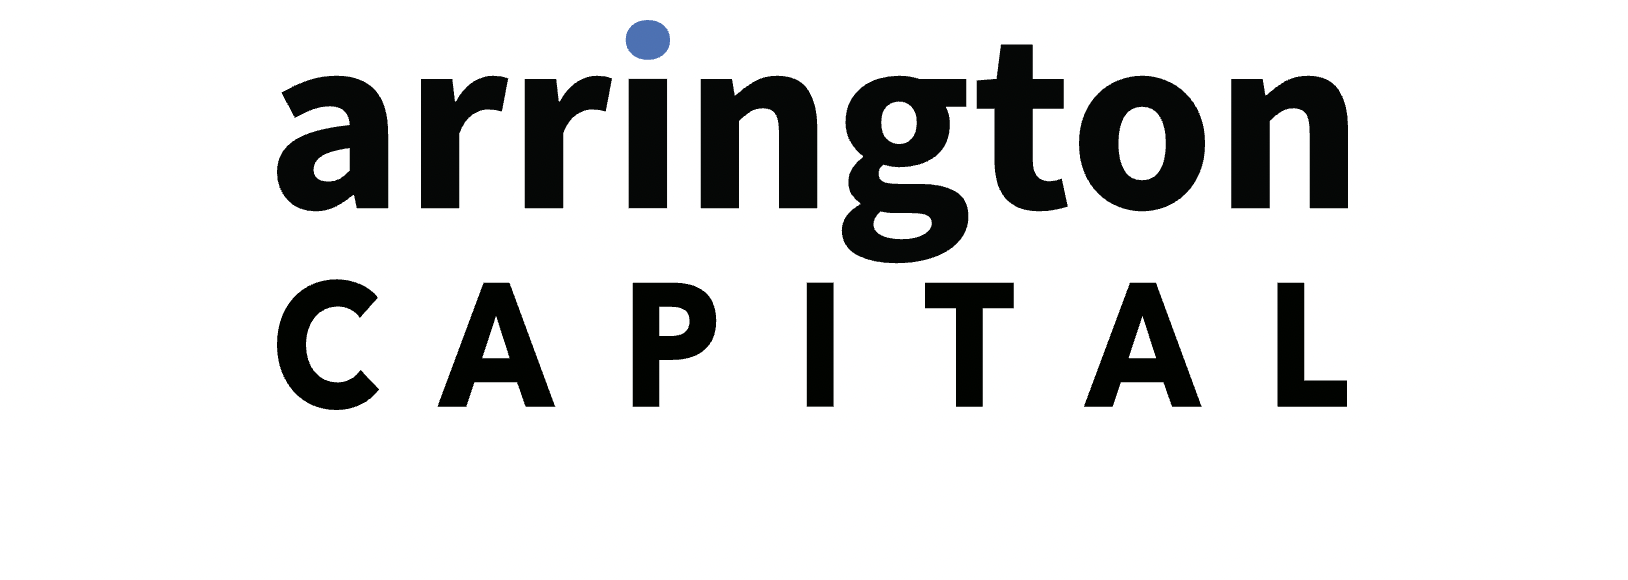 Arrington XRP Capital là gì? Thông tin chi tiết về quỹ đầu tư này